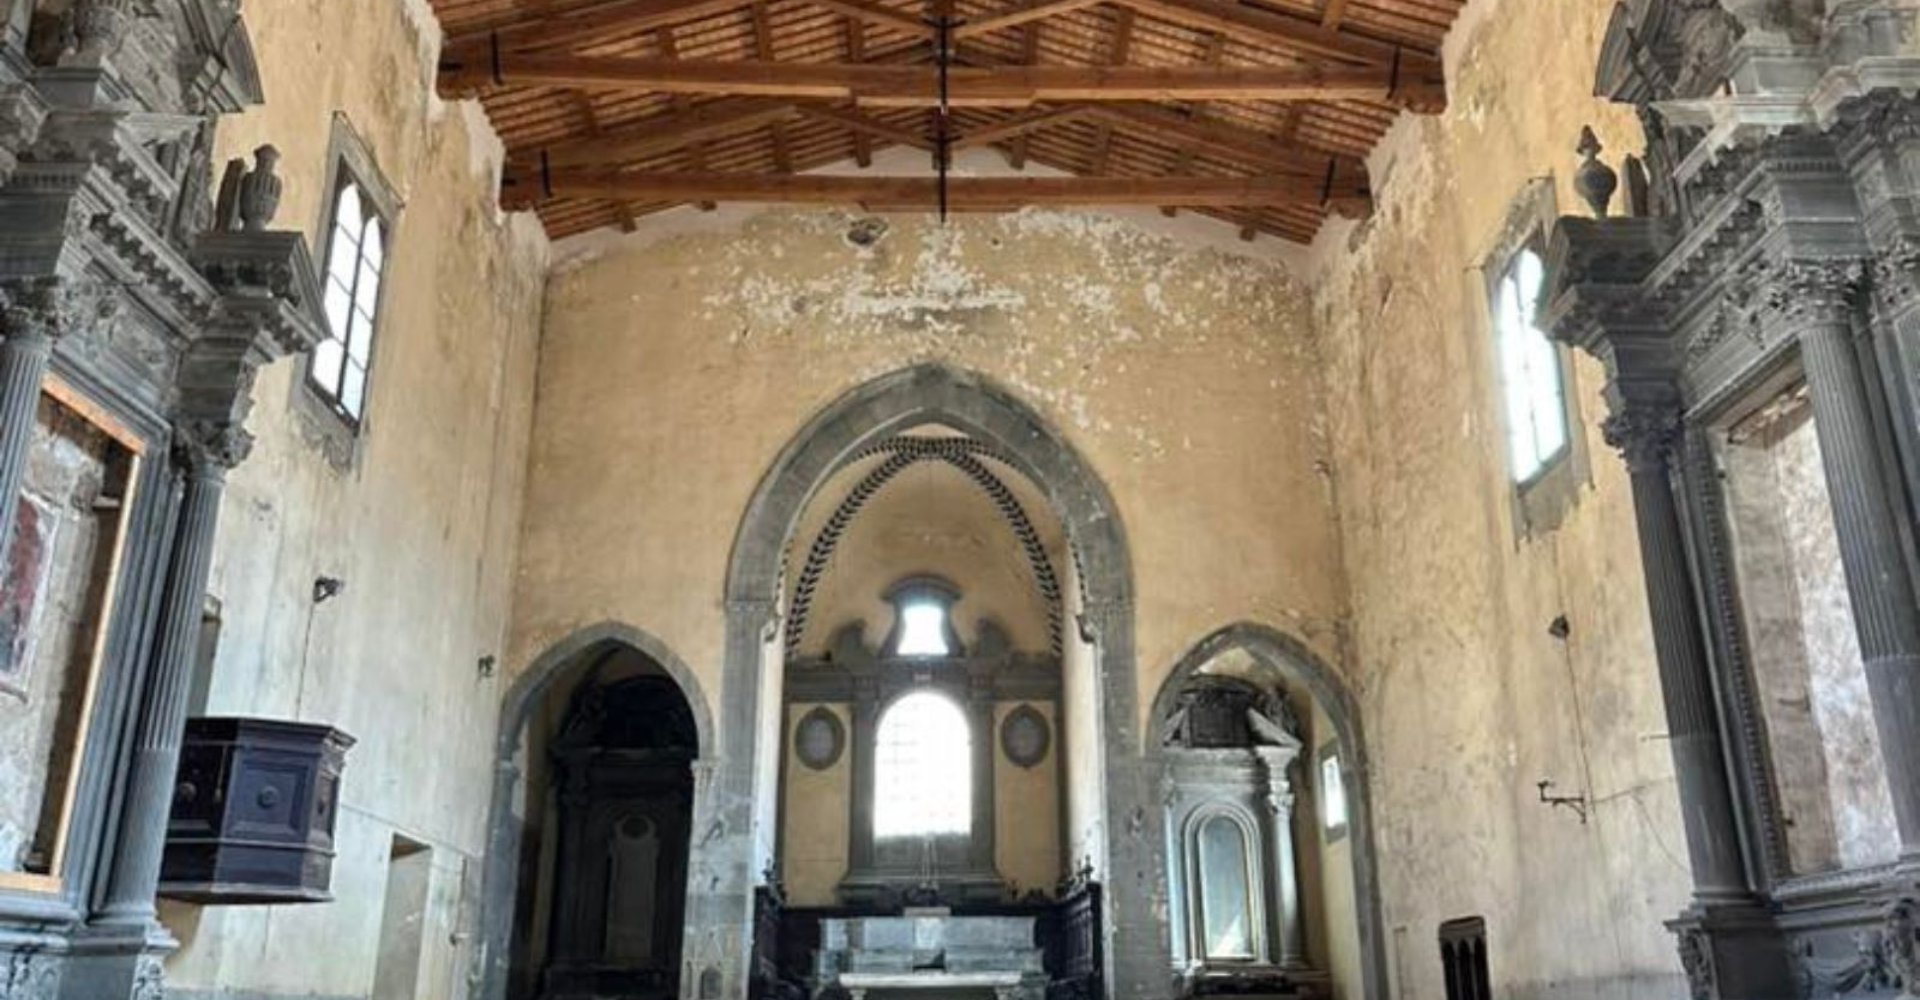 Interior of the church of St. Augustine in Castiglion Fiorentino